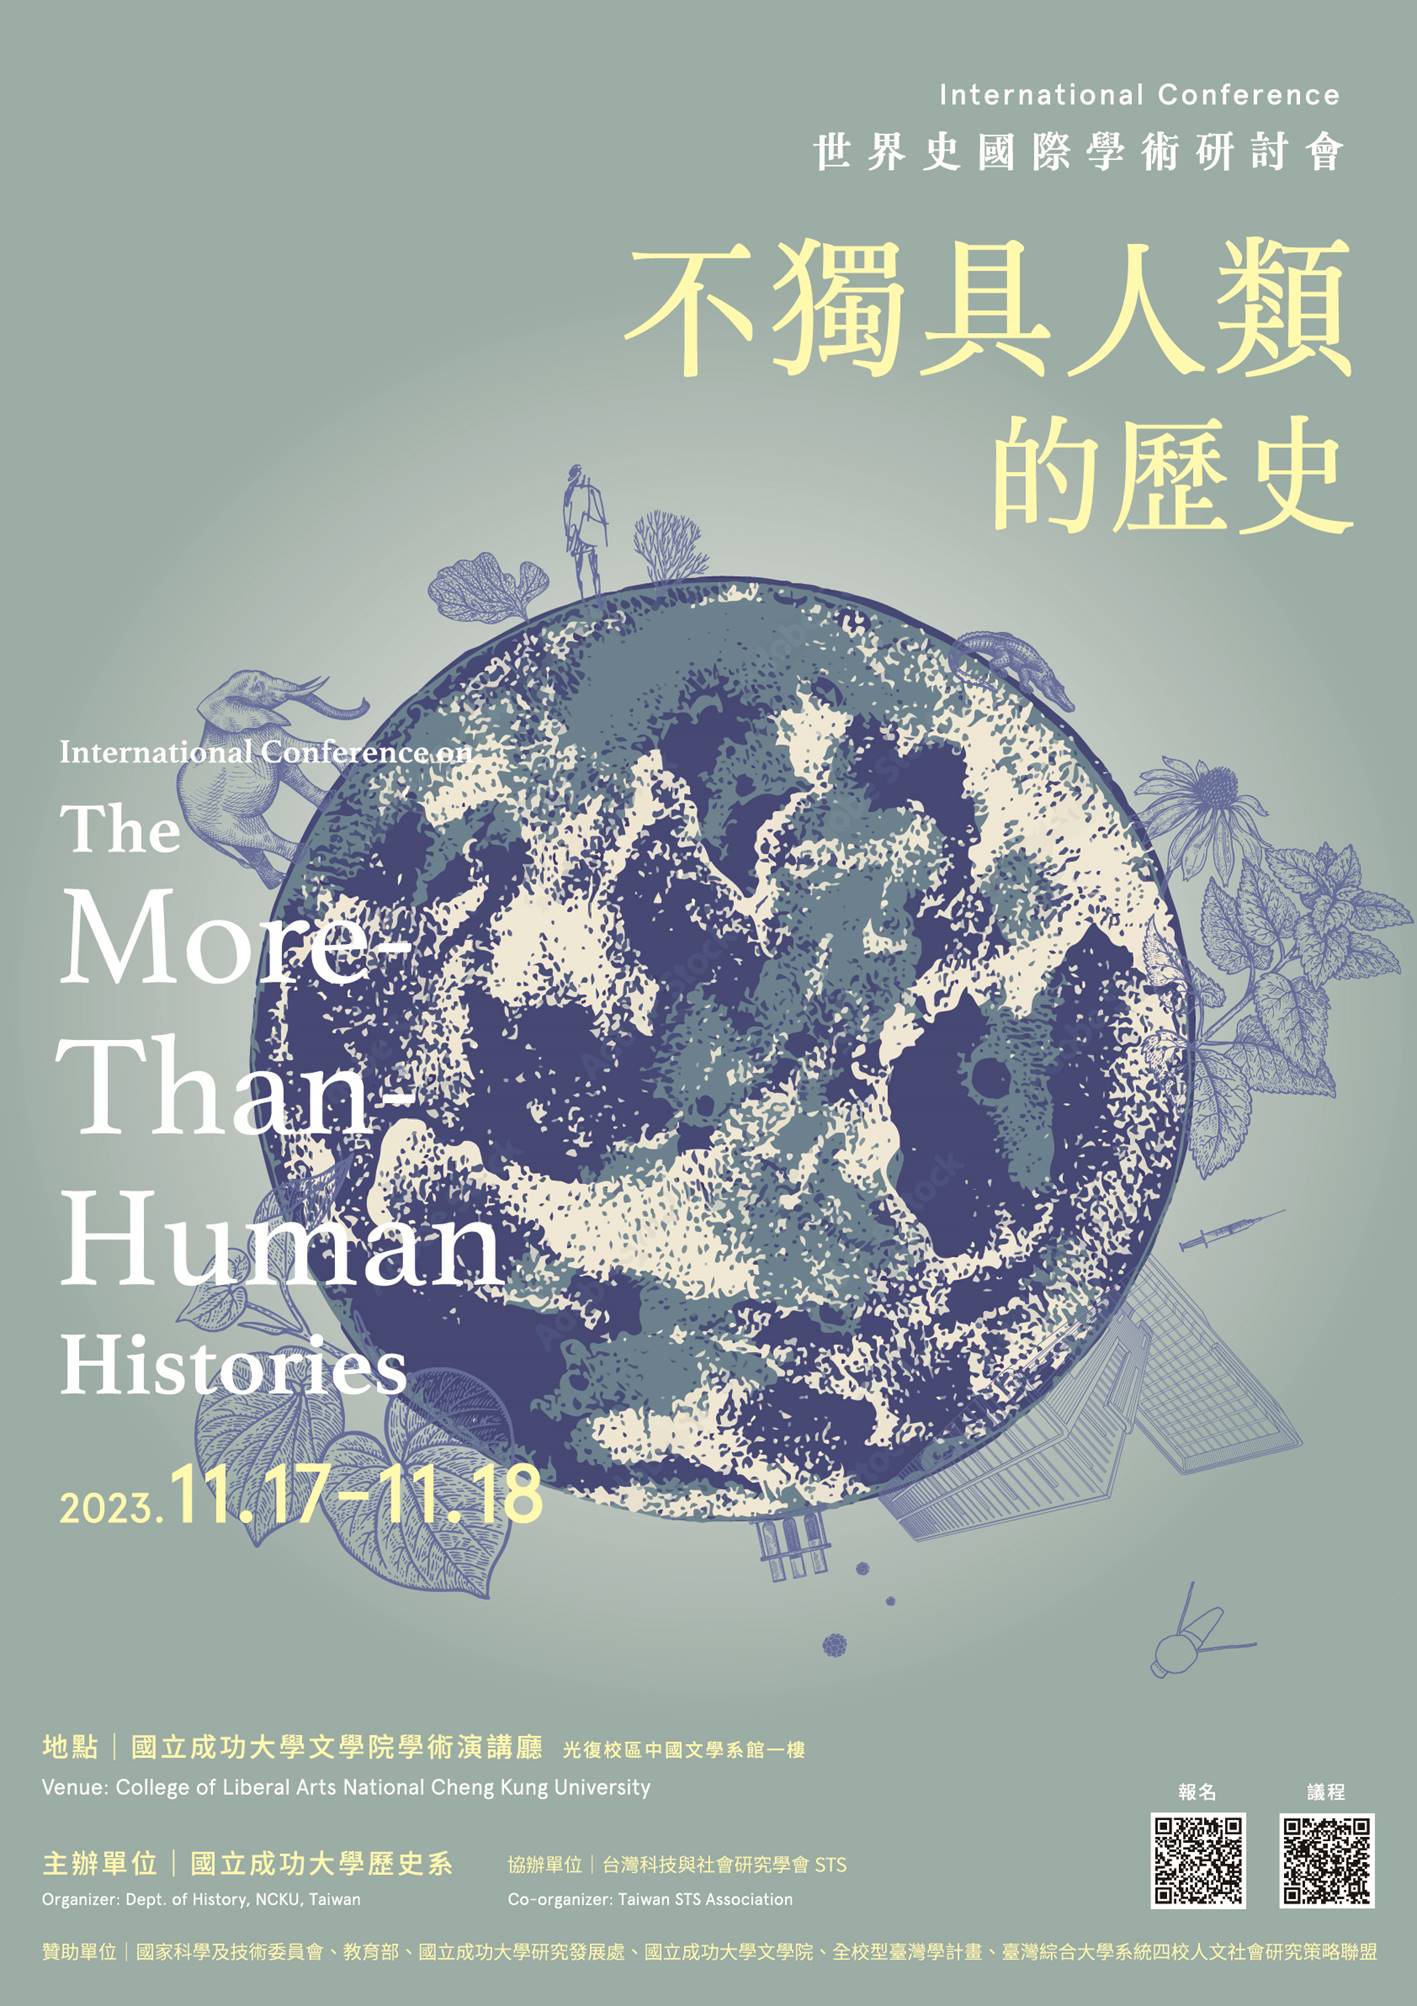 「不獨具人類的歷史」國際學術研討會